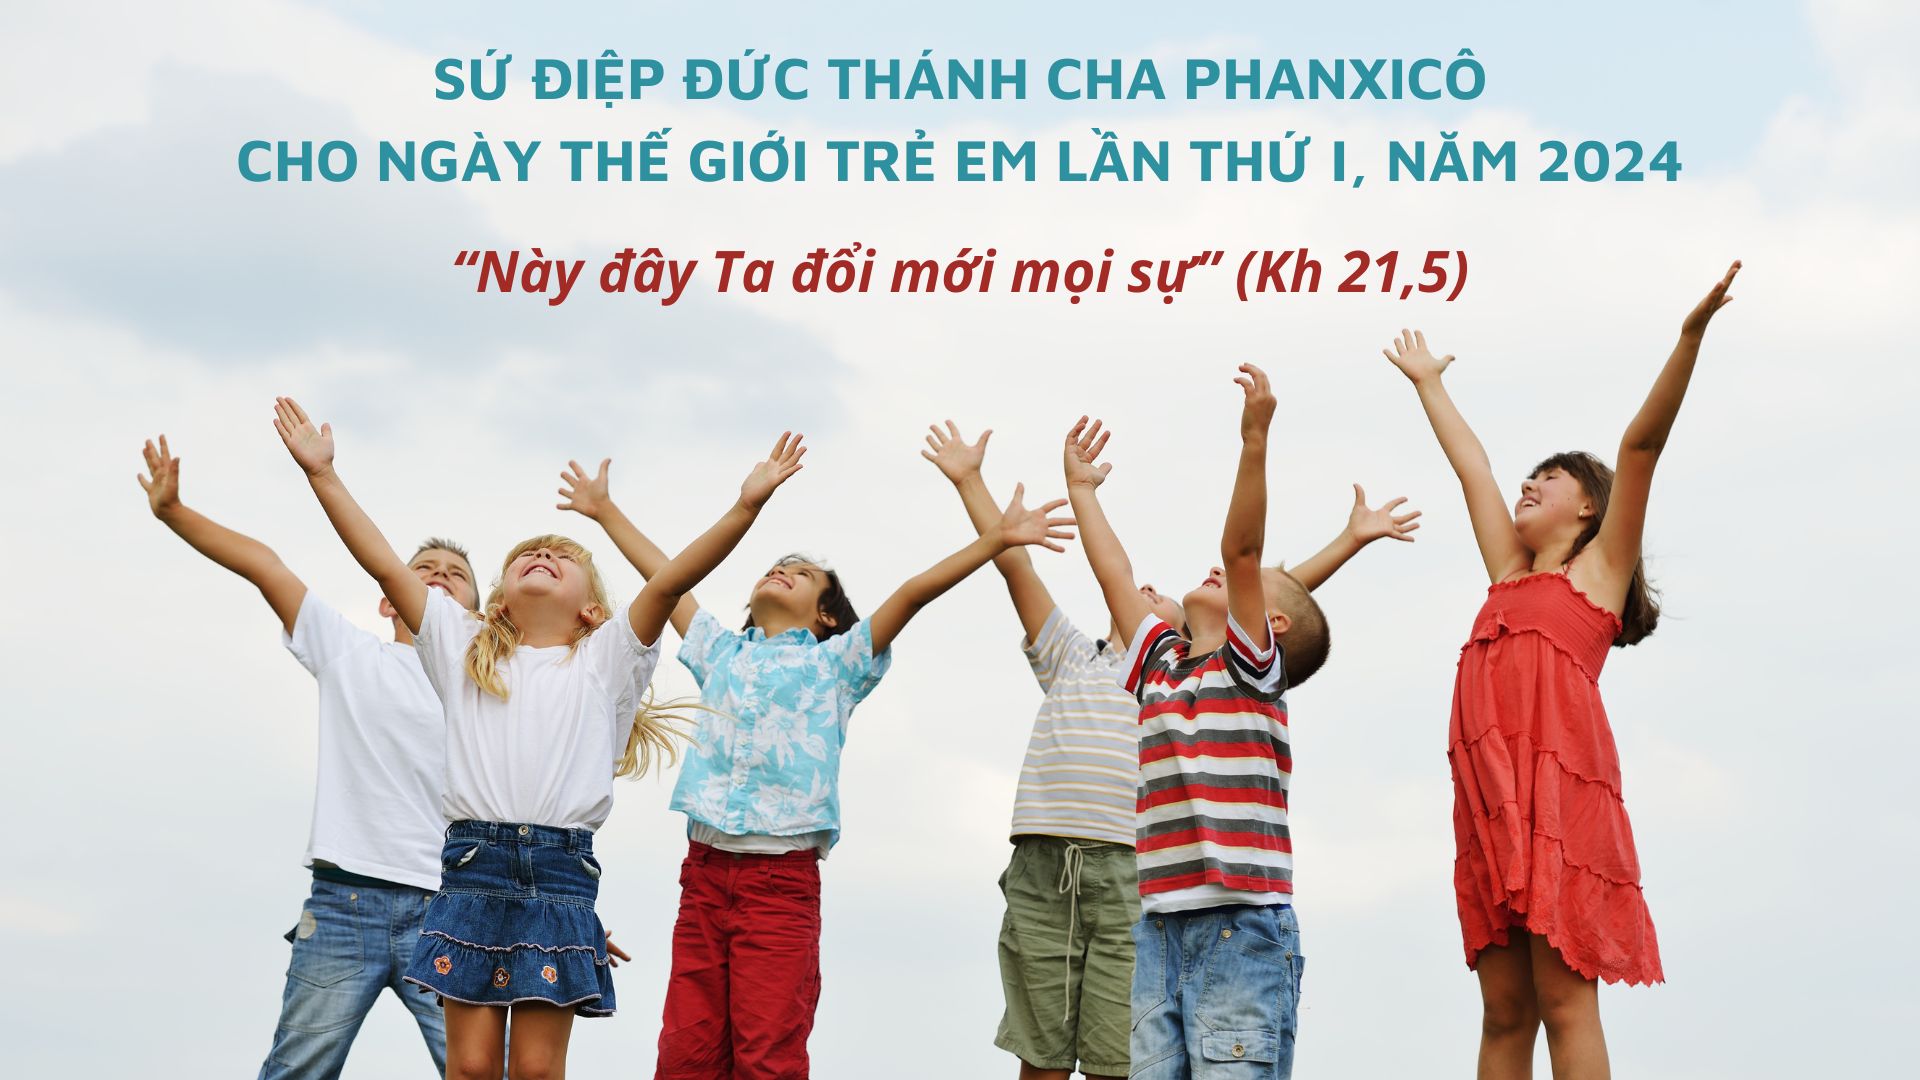 Sứ điệp Đức Thánh Cha cho Ngày Thế giới Trẻ em lần thứ I, năm 2024: “Này đây Ta đổi mới mọi sự” (Kh 21,5)